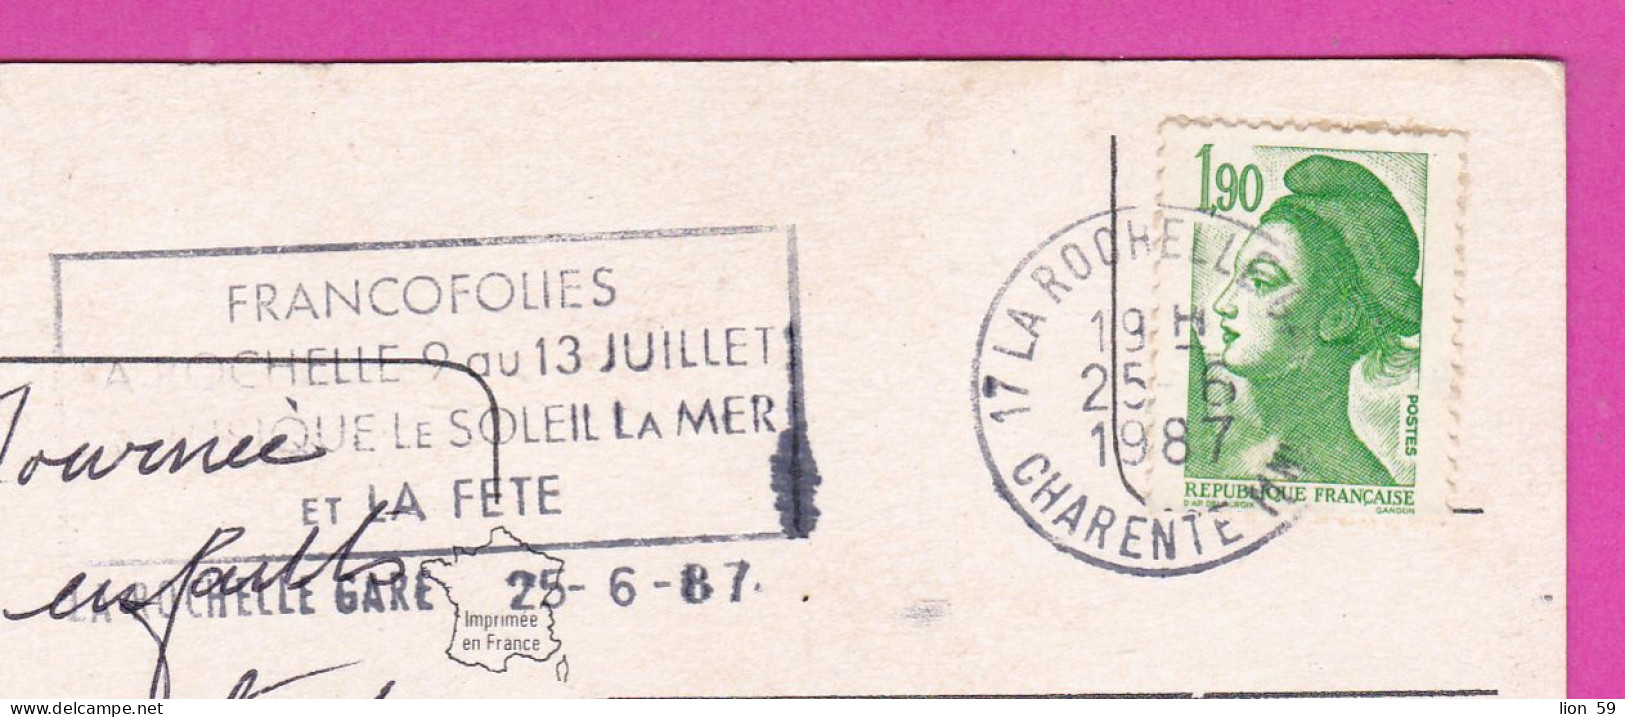 294219 / France - La Rochelle En Aunis PC 1987 USED 1.90 Fr. Liberty Of Gandon , Flamme Musique Le Soleil La Mer Et La F - 1982-1990 Liberté (Gandon)